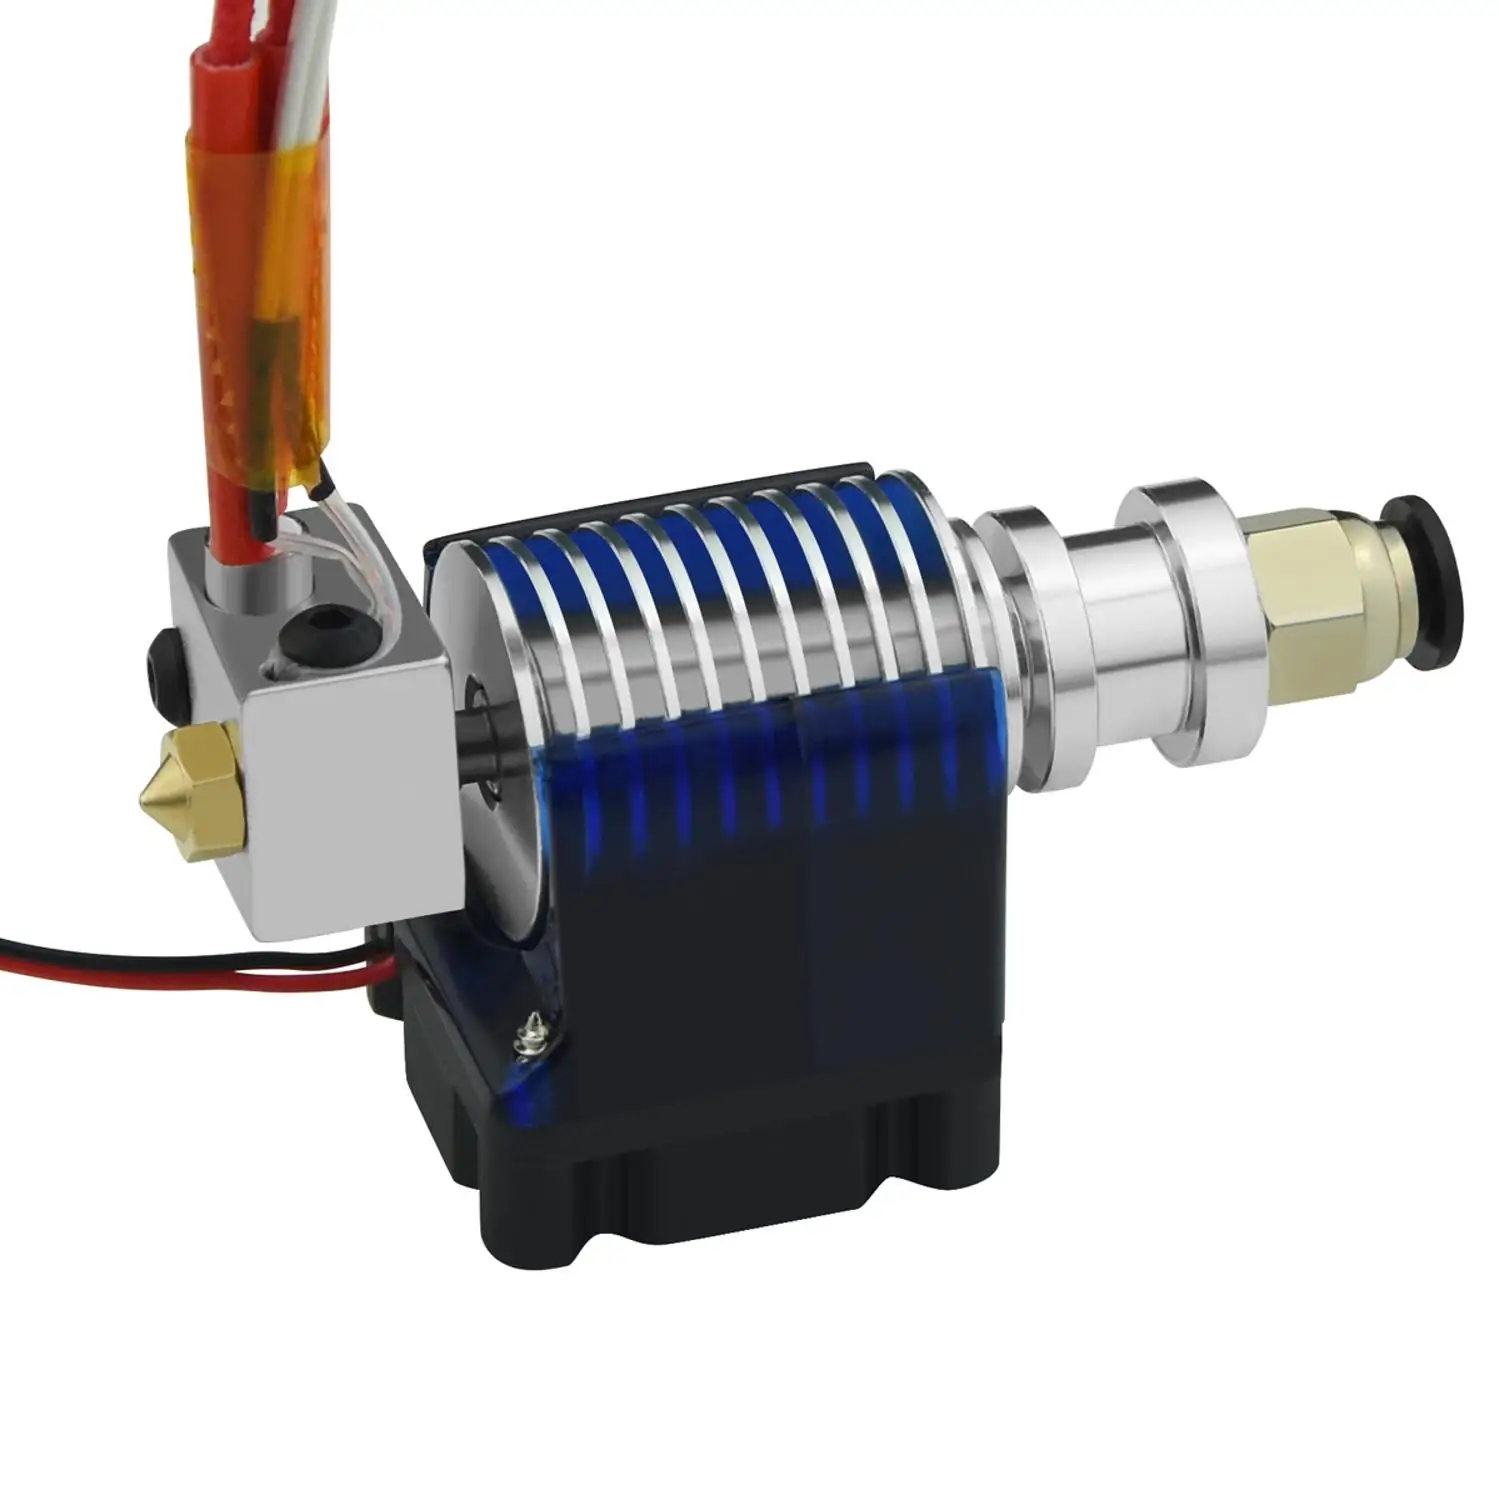 Детали для 3D-принтера V6 J-head Hotend дистанционный экструдер комплект охлаждающий вентилятор кронштейн блок термисторы сопло 0,4 мм 1,75 мм нити